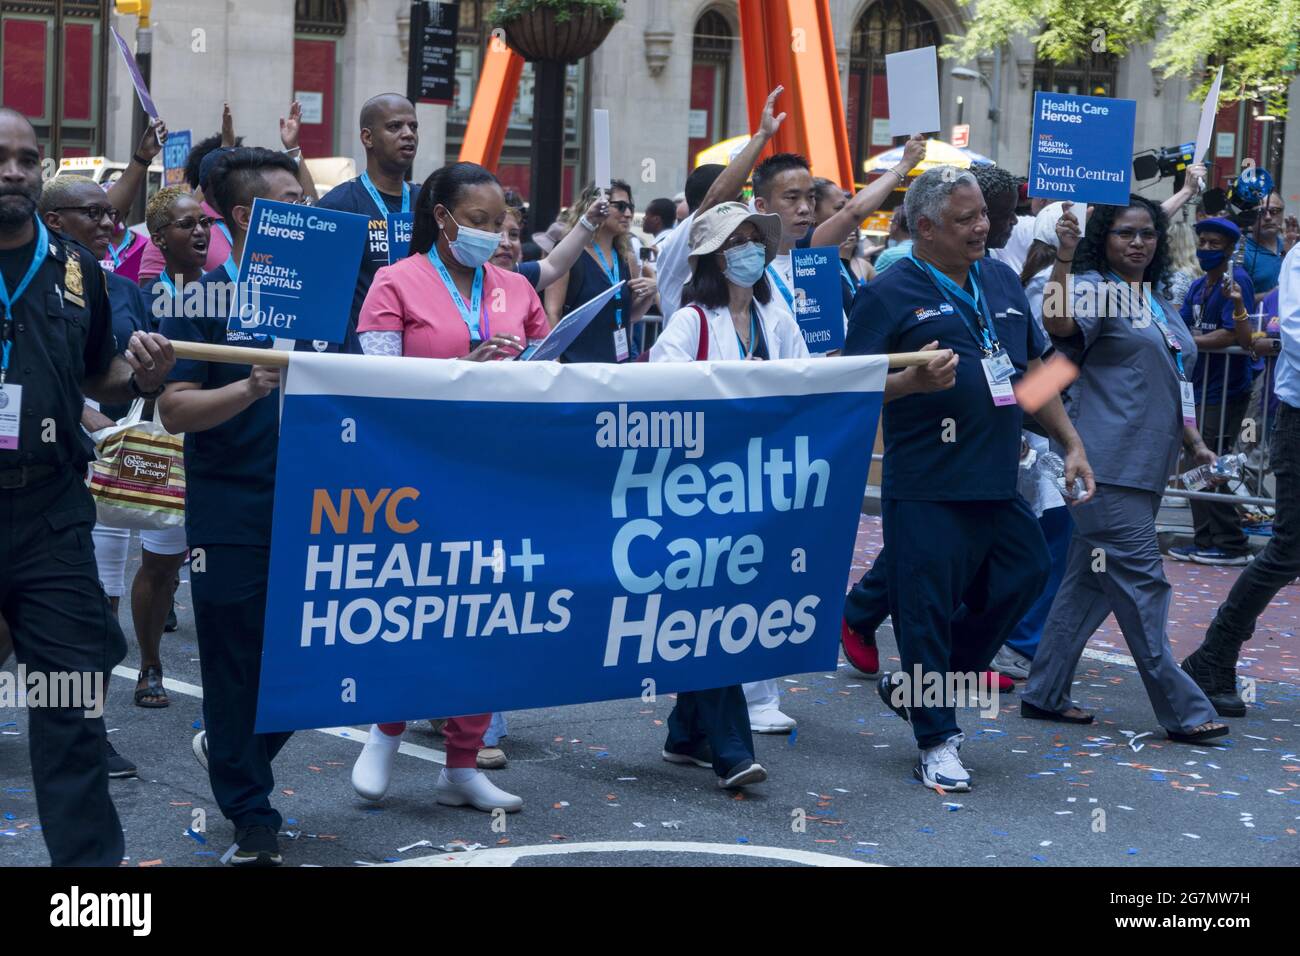 Wichtige Mitarbeiter, die New York City durch die COVID-19-Pandemie geholfen haben, wurden mit einer besonderen Parade auf dem Canyon of Heroes entlang des Broadway in Lower Manhattan geehrt Stockfoto